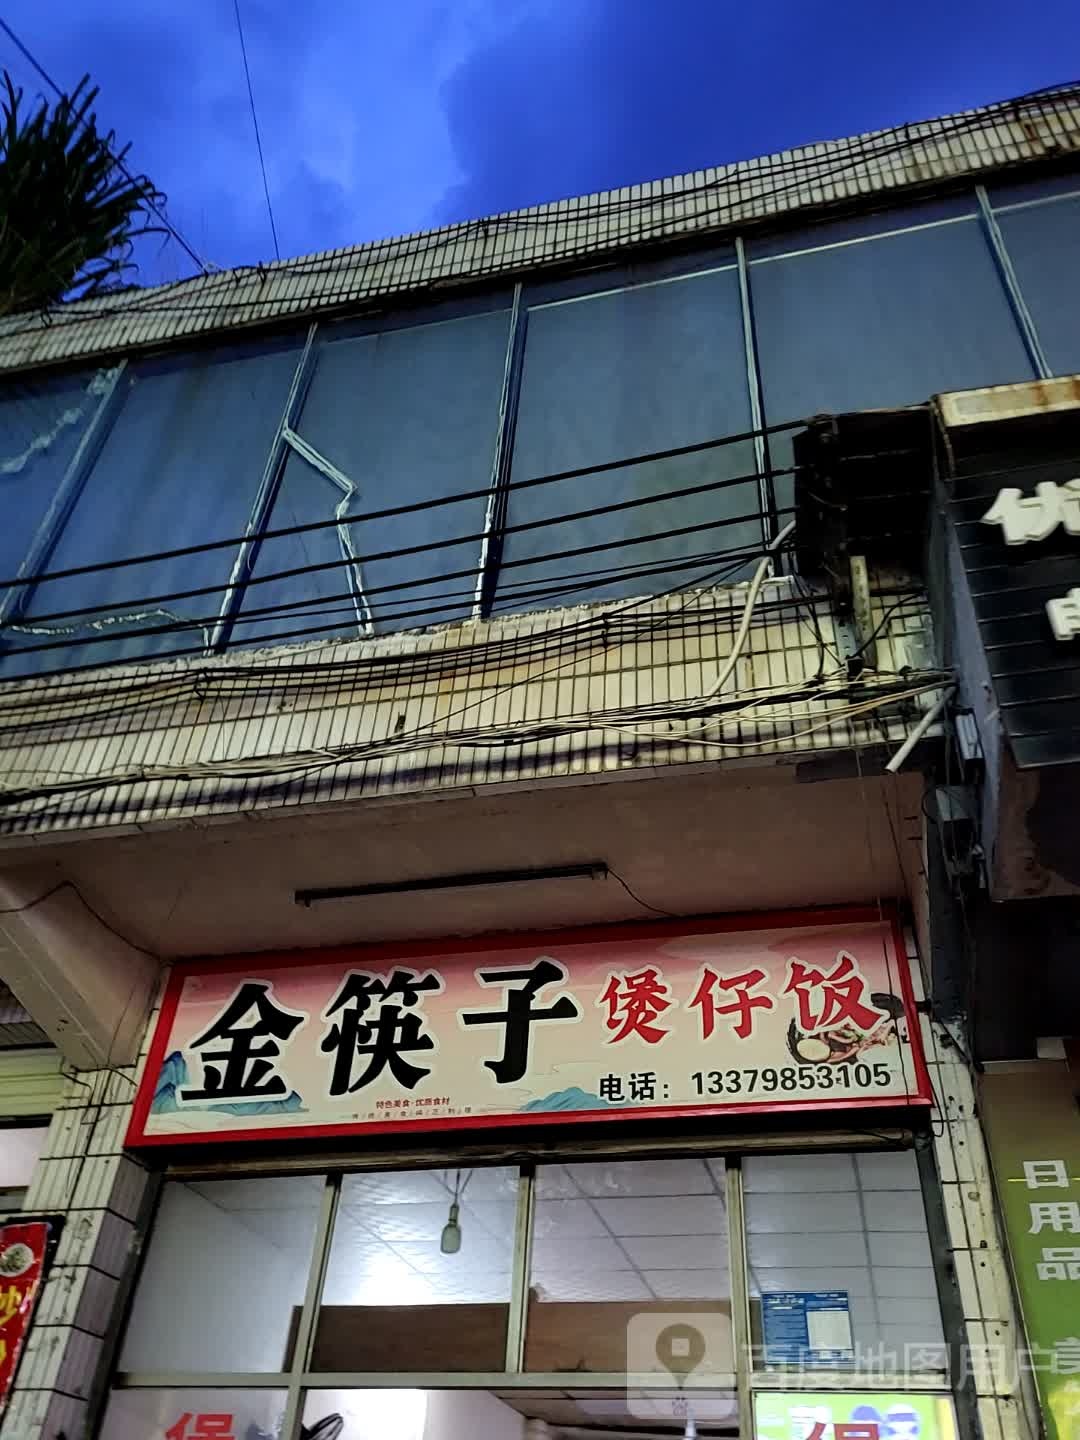 金筷子煲仔饭(大勇商业广场店)